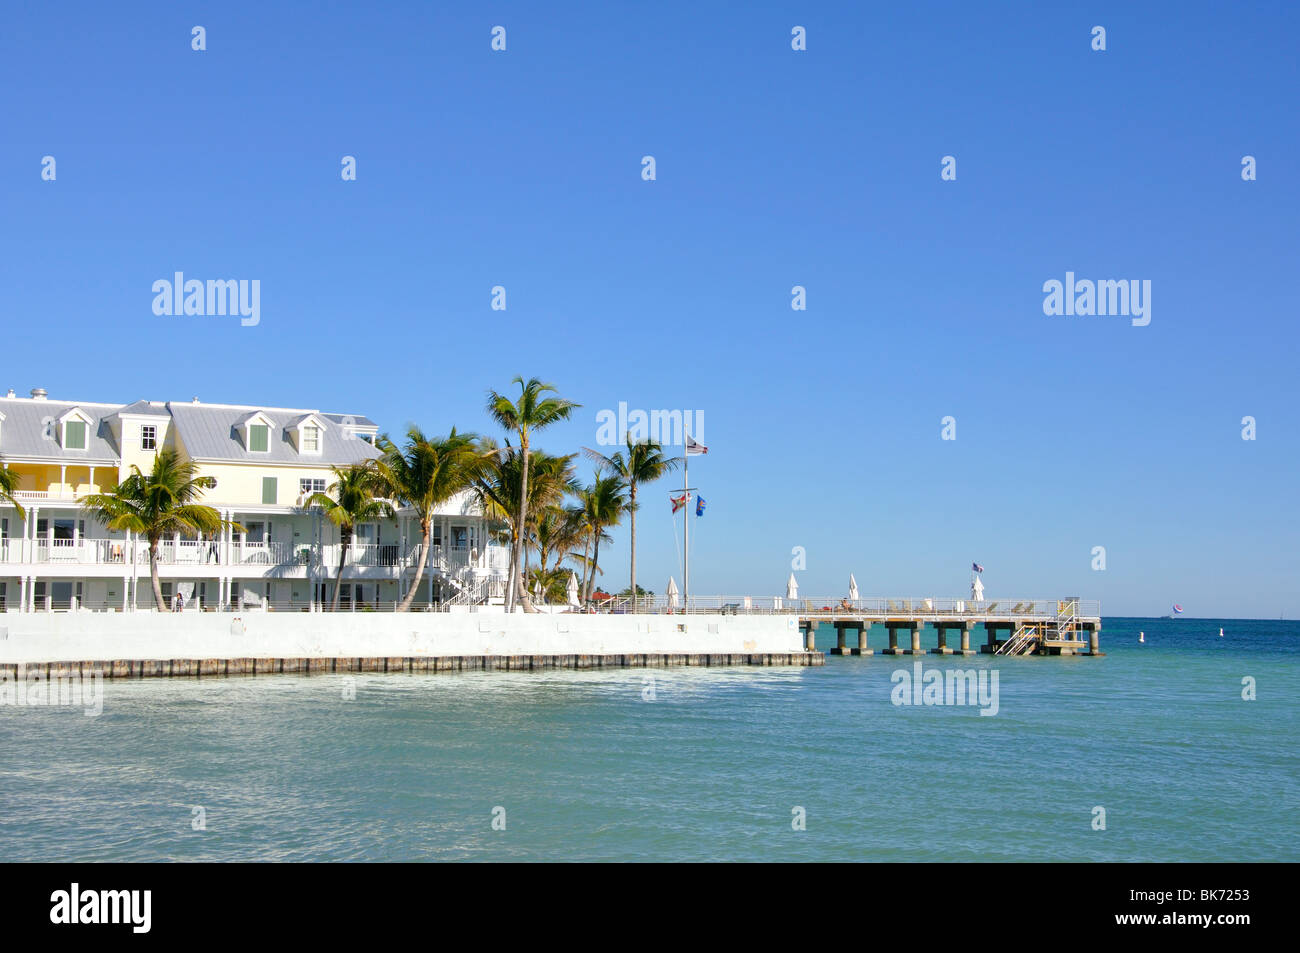 Hotel, Key West, Florida, USA Stock Photo